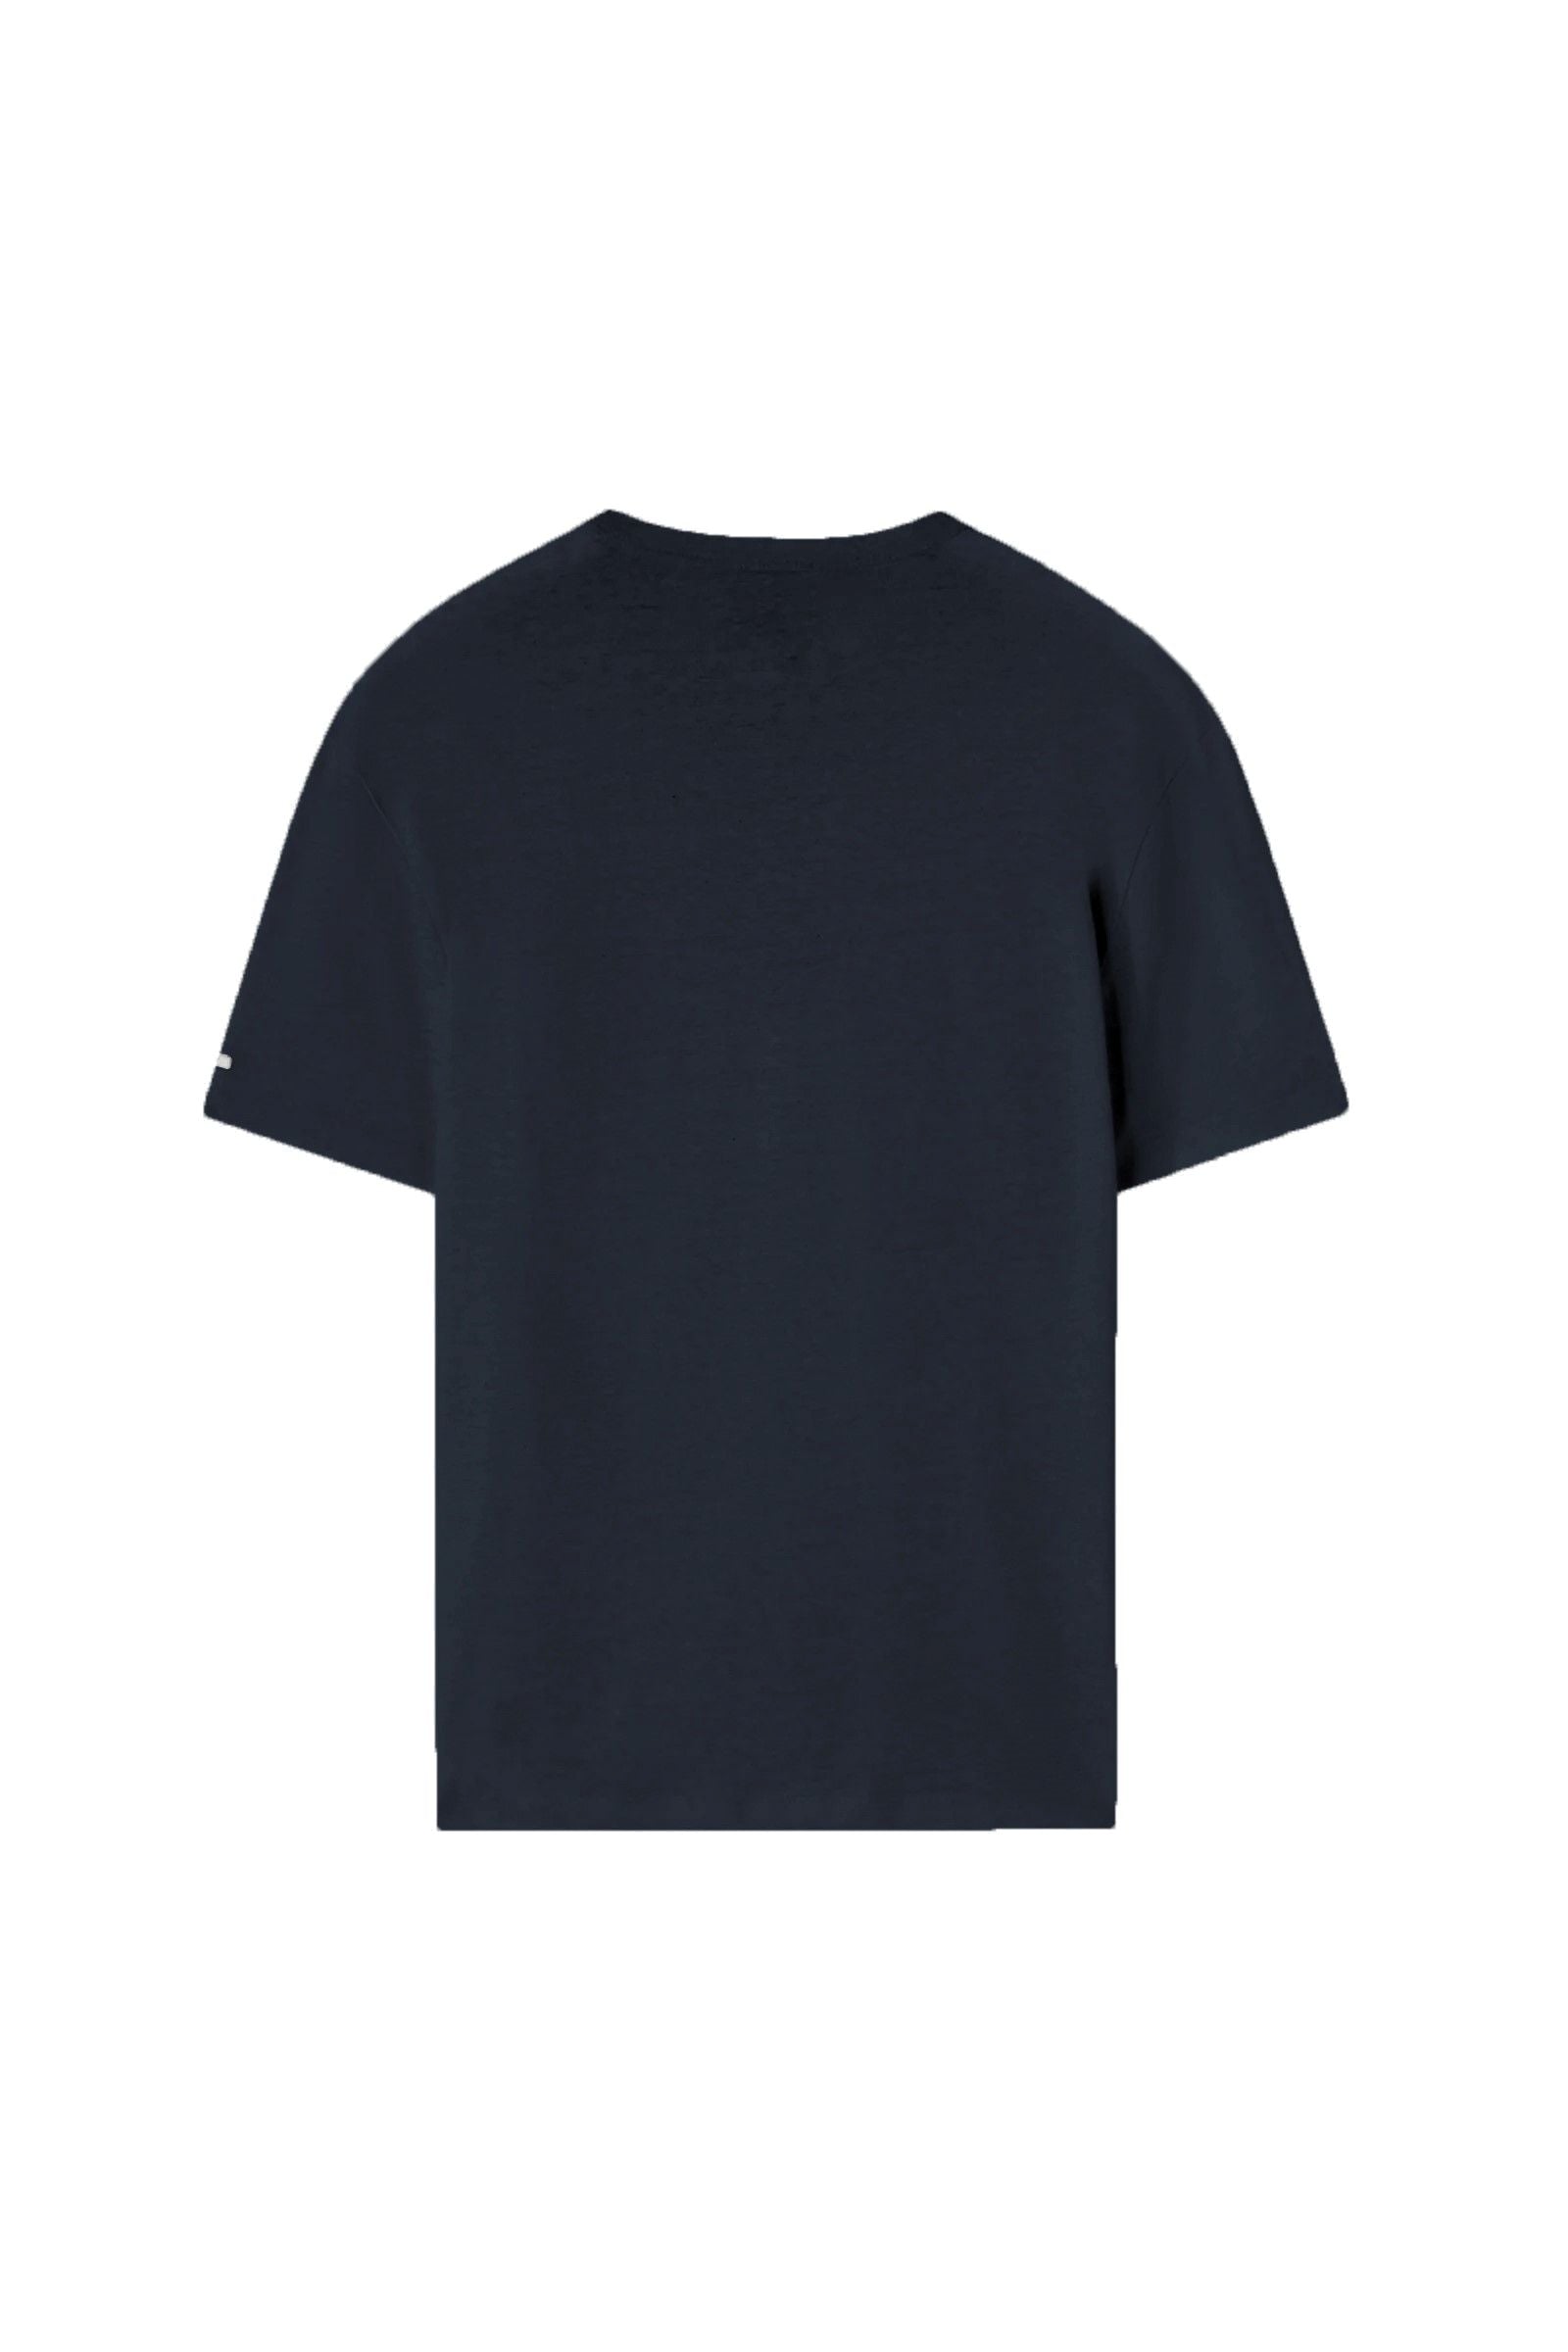 Edgard Ser T-Shirt in Navy Blue T-Shirts GAS   